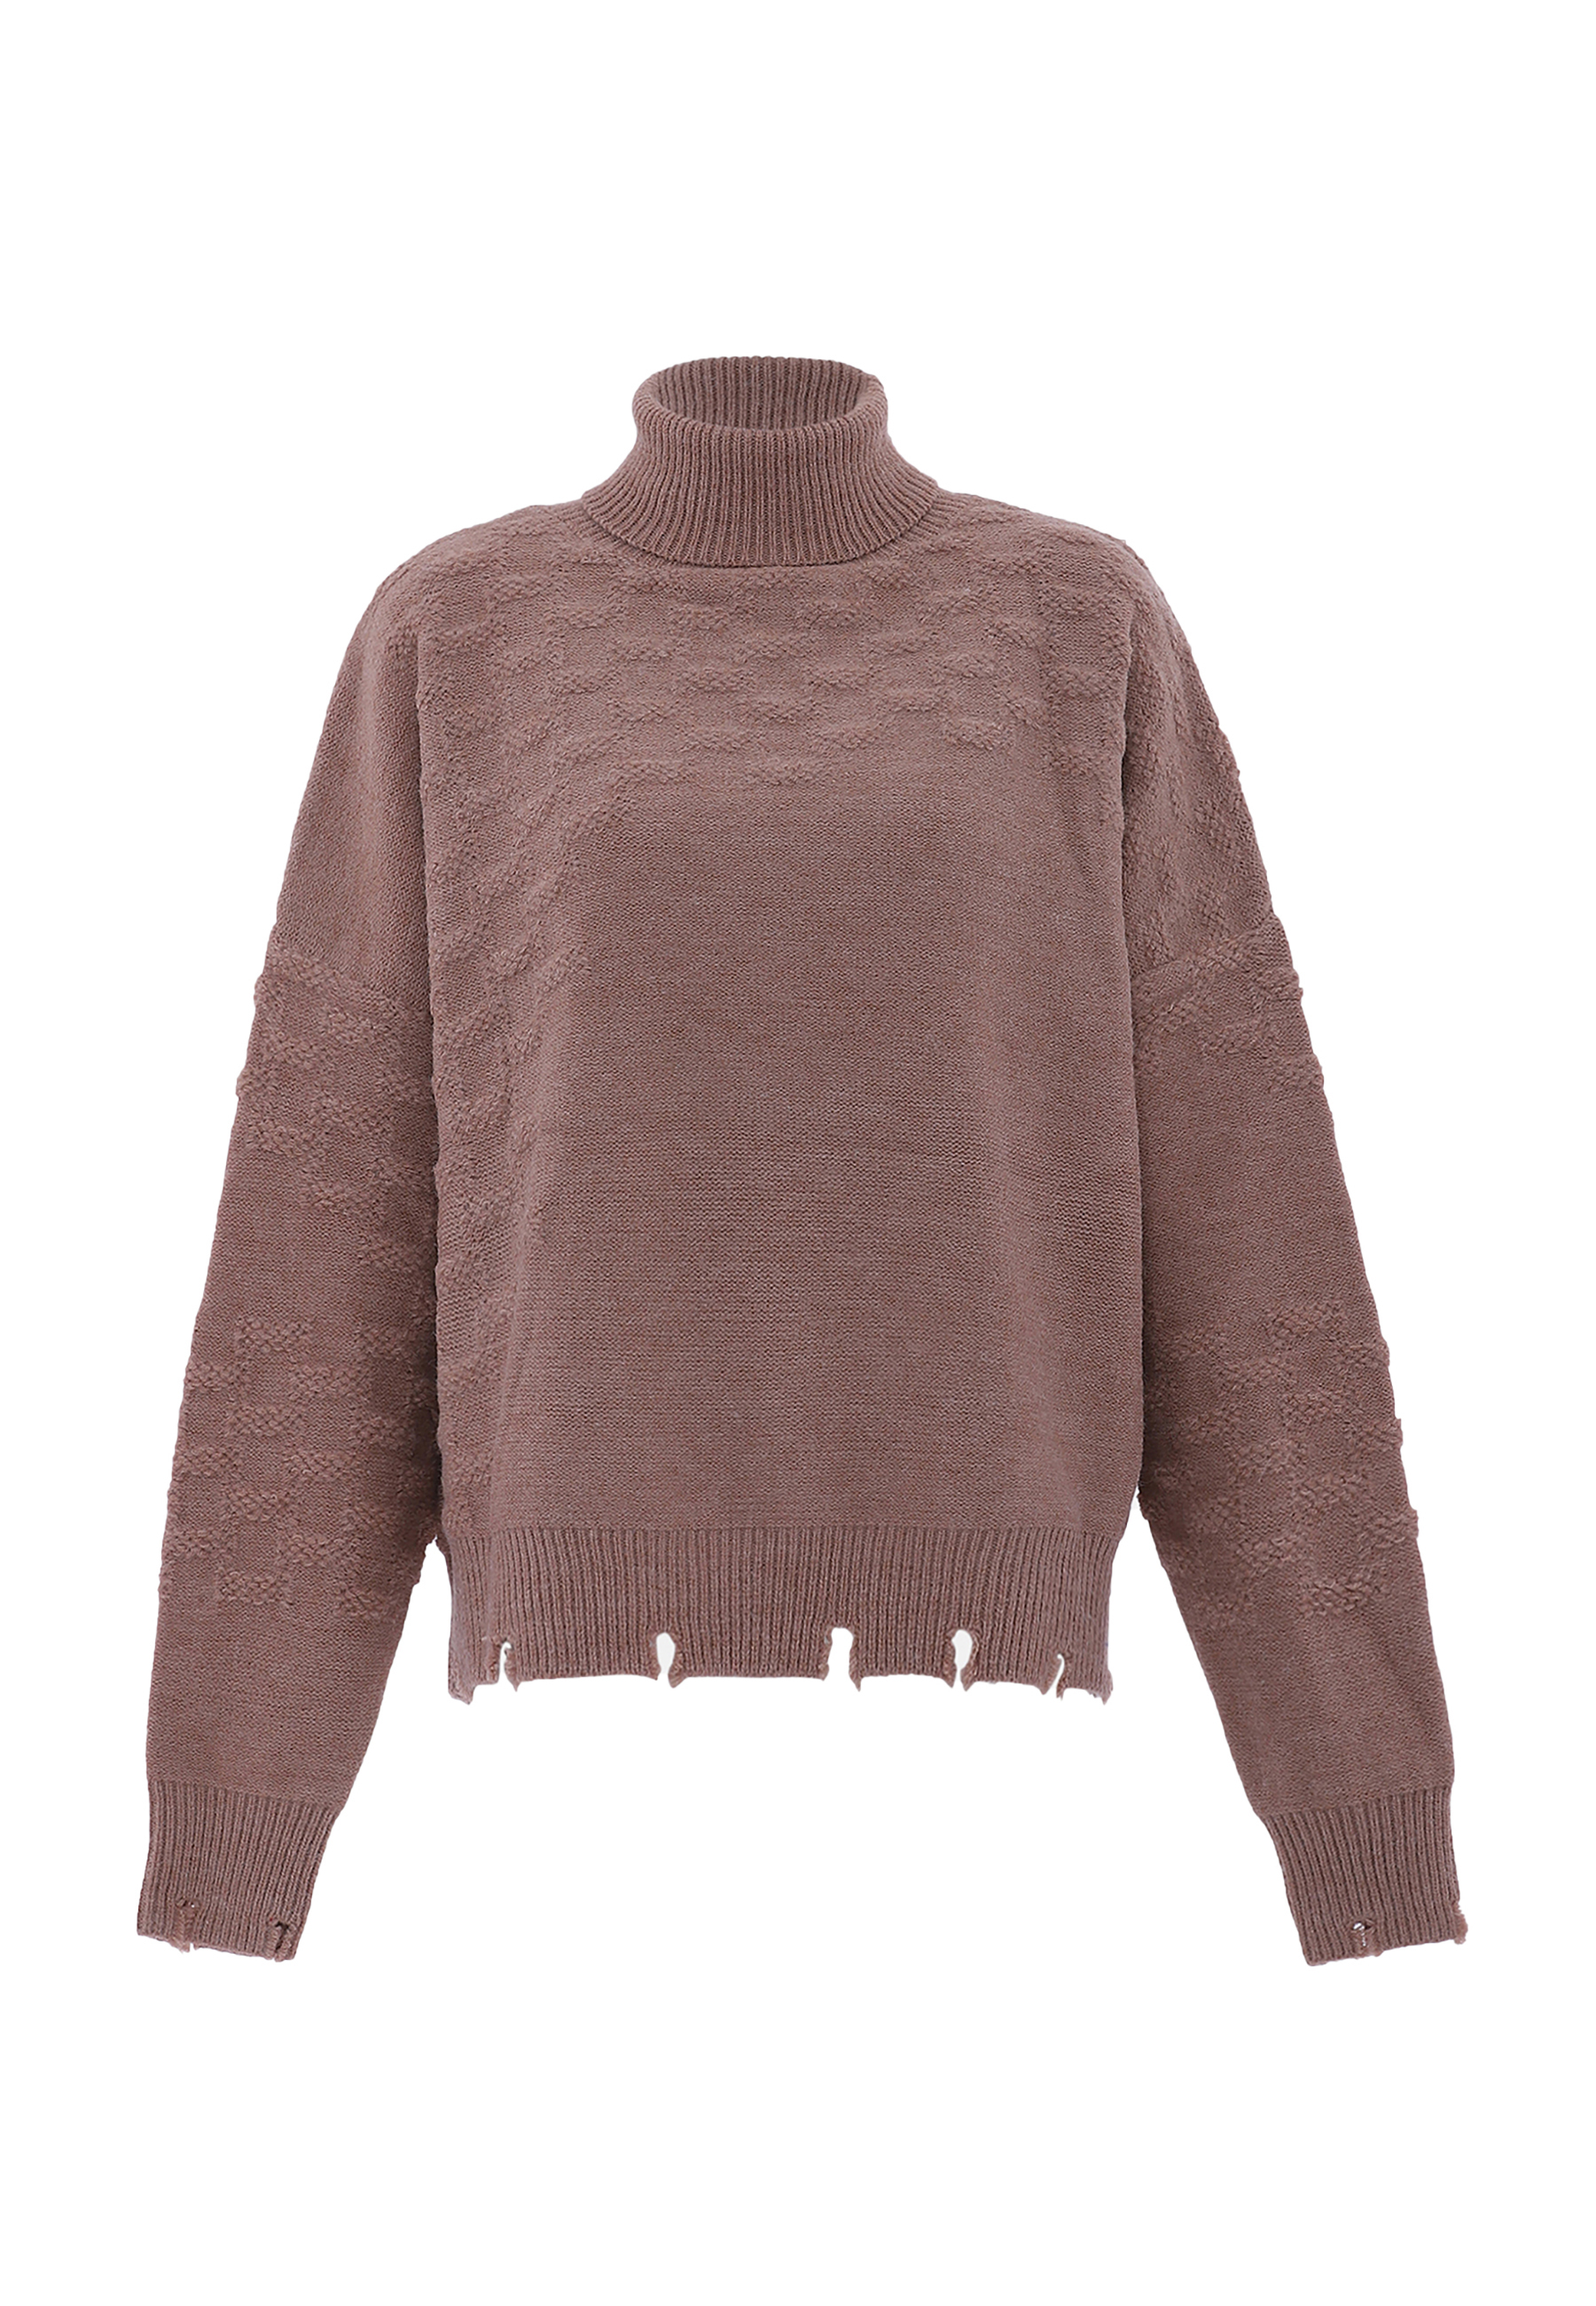 Свитер FENIA Sweater, бежевый свитер fenia sweater белый